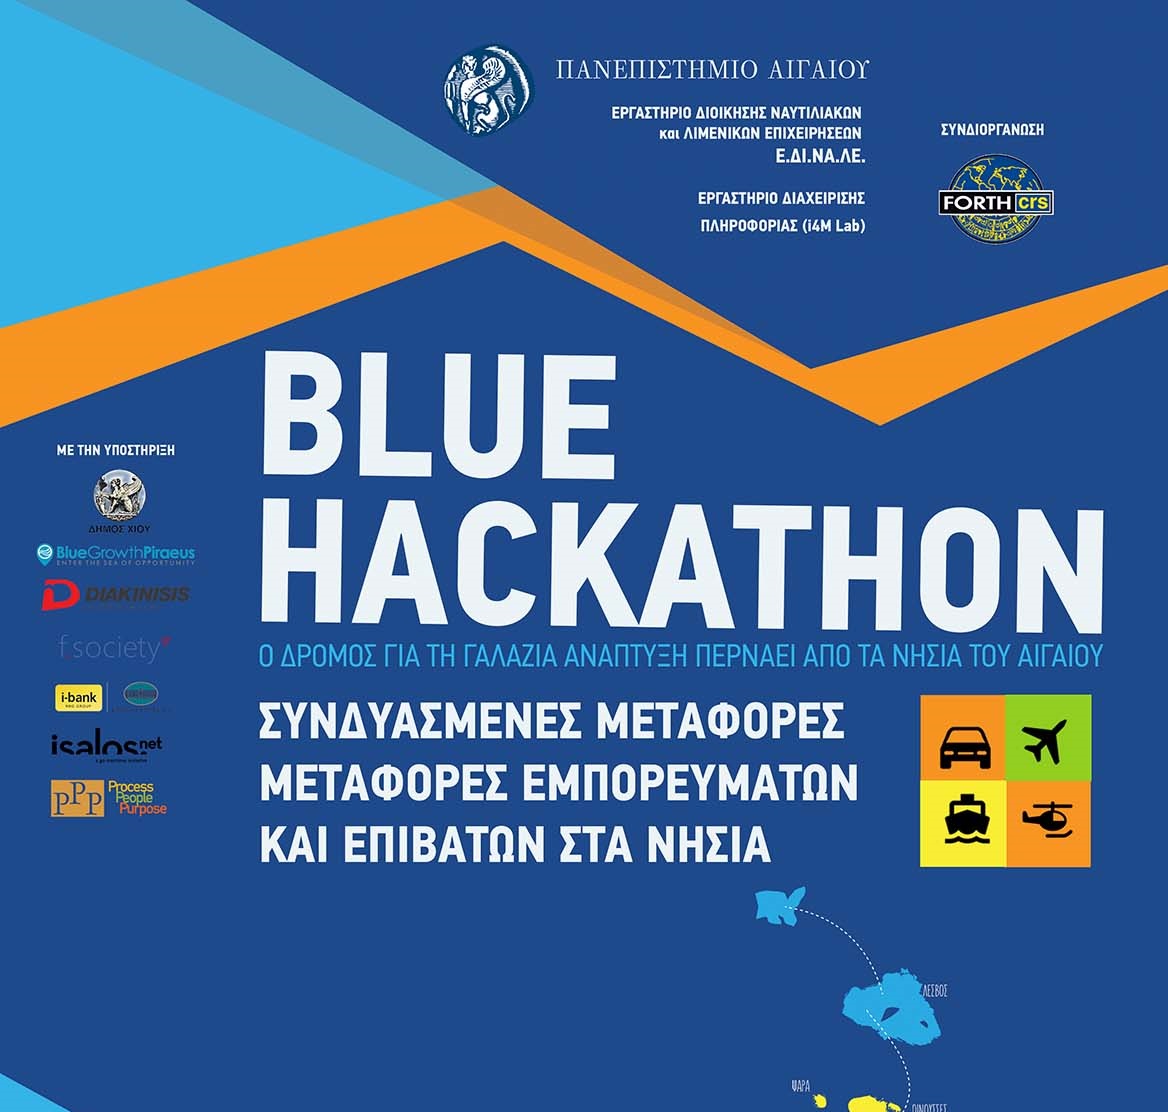 blue hackathon 2017